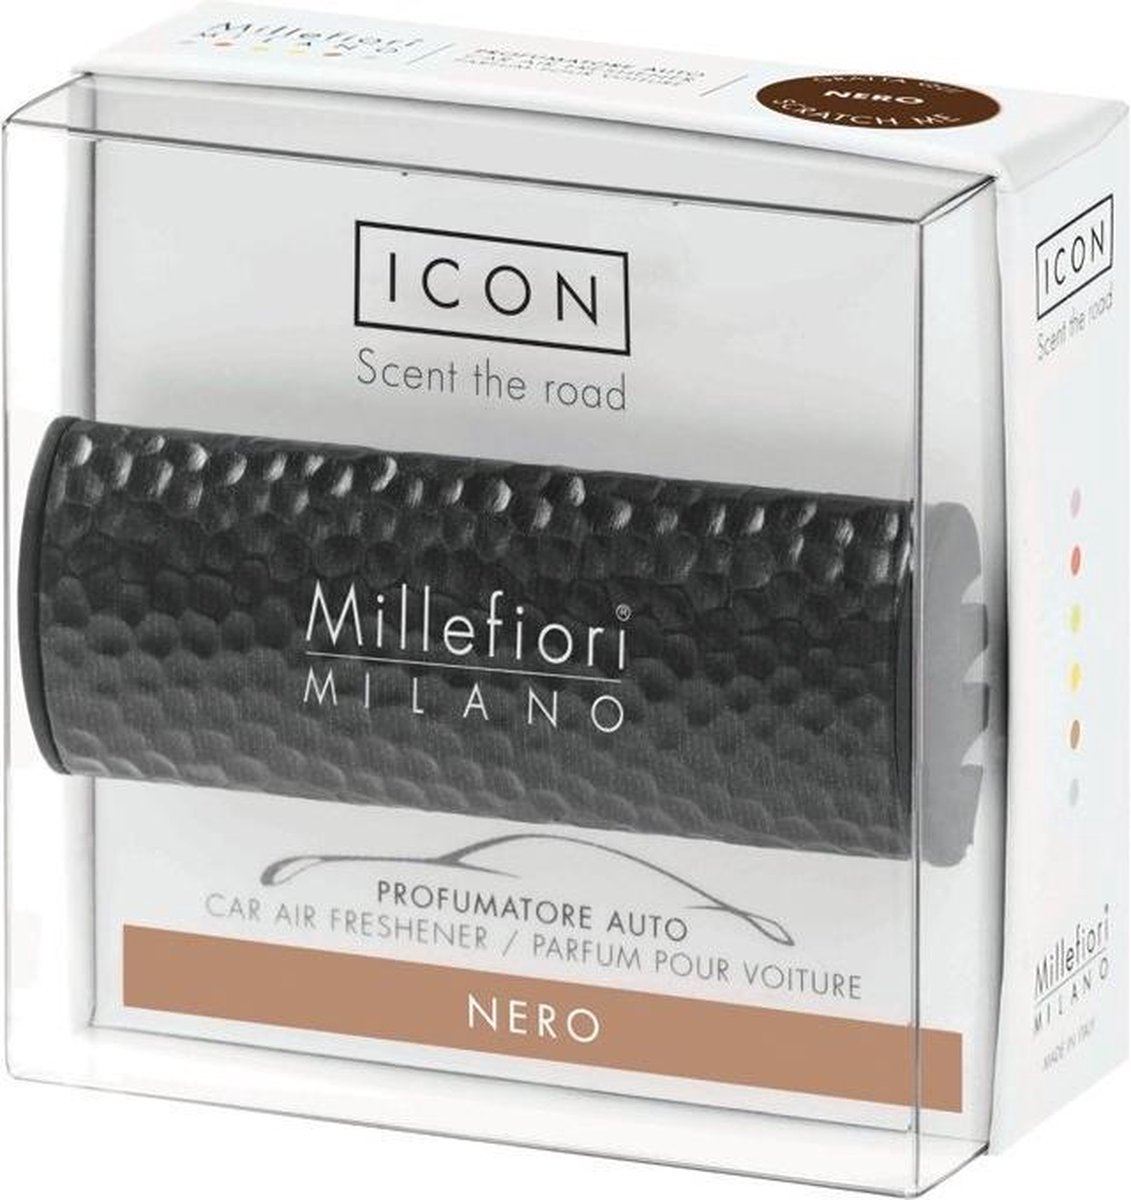 Millefiori Milano Auto parfum Nero (Metal Shades) - millefiori